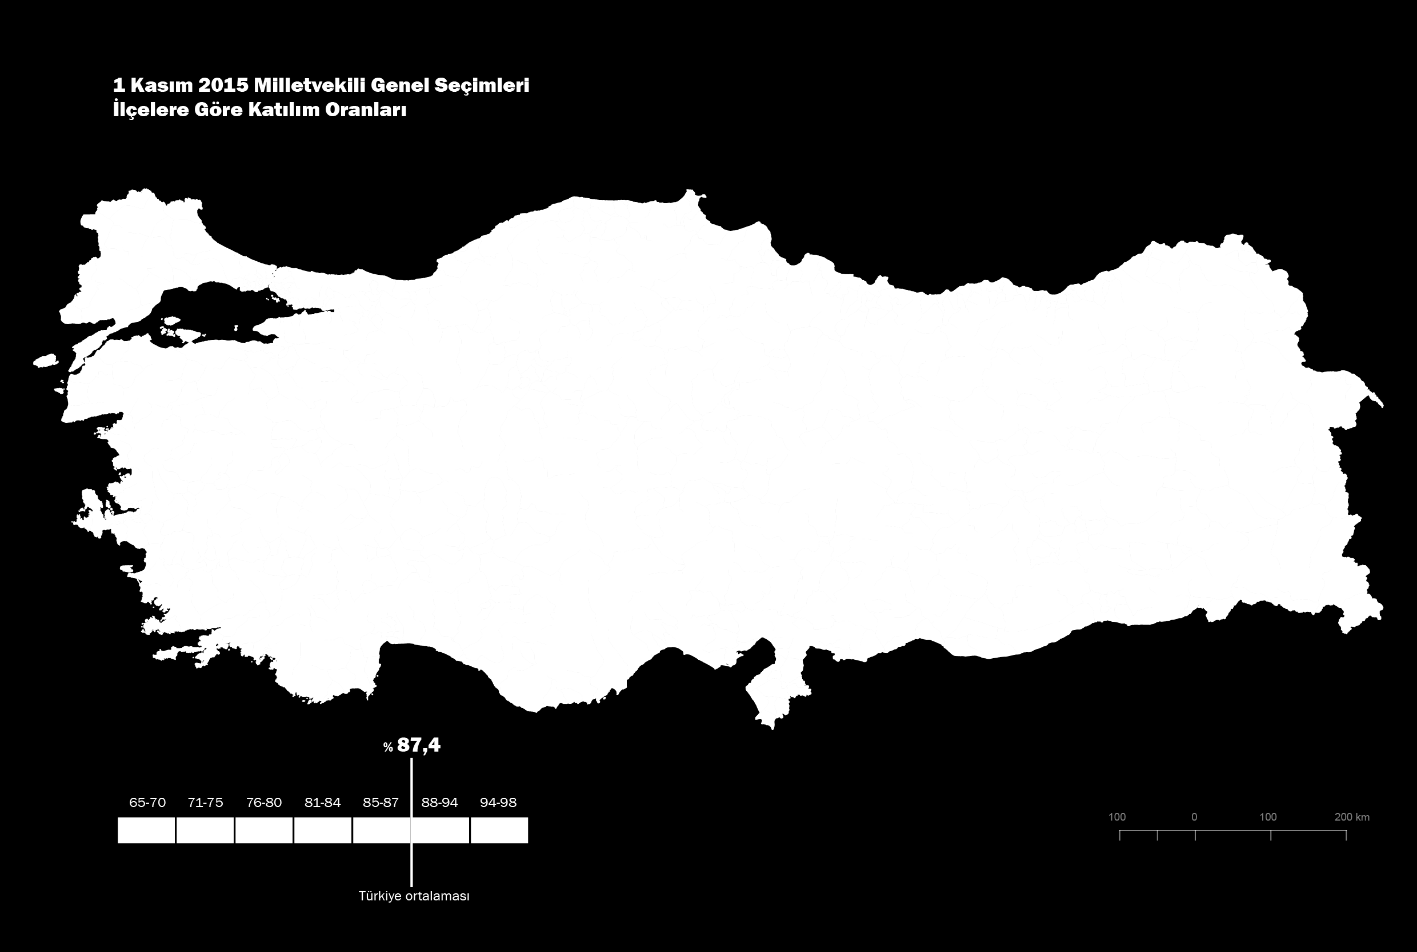 Katılım oranı değişmedi ancak katılmayanların adresi değişti Seçime katılım Türkiye genelinde 5 ay önceki seçimlere göre 1,1 puan arttı.